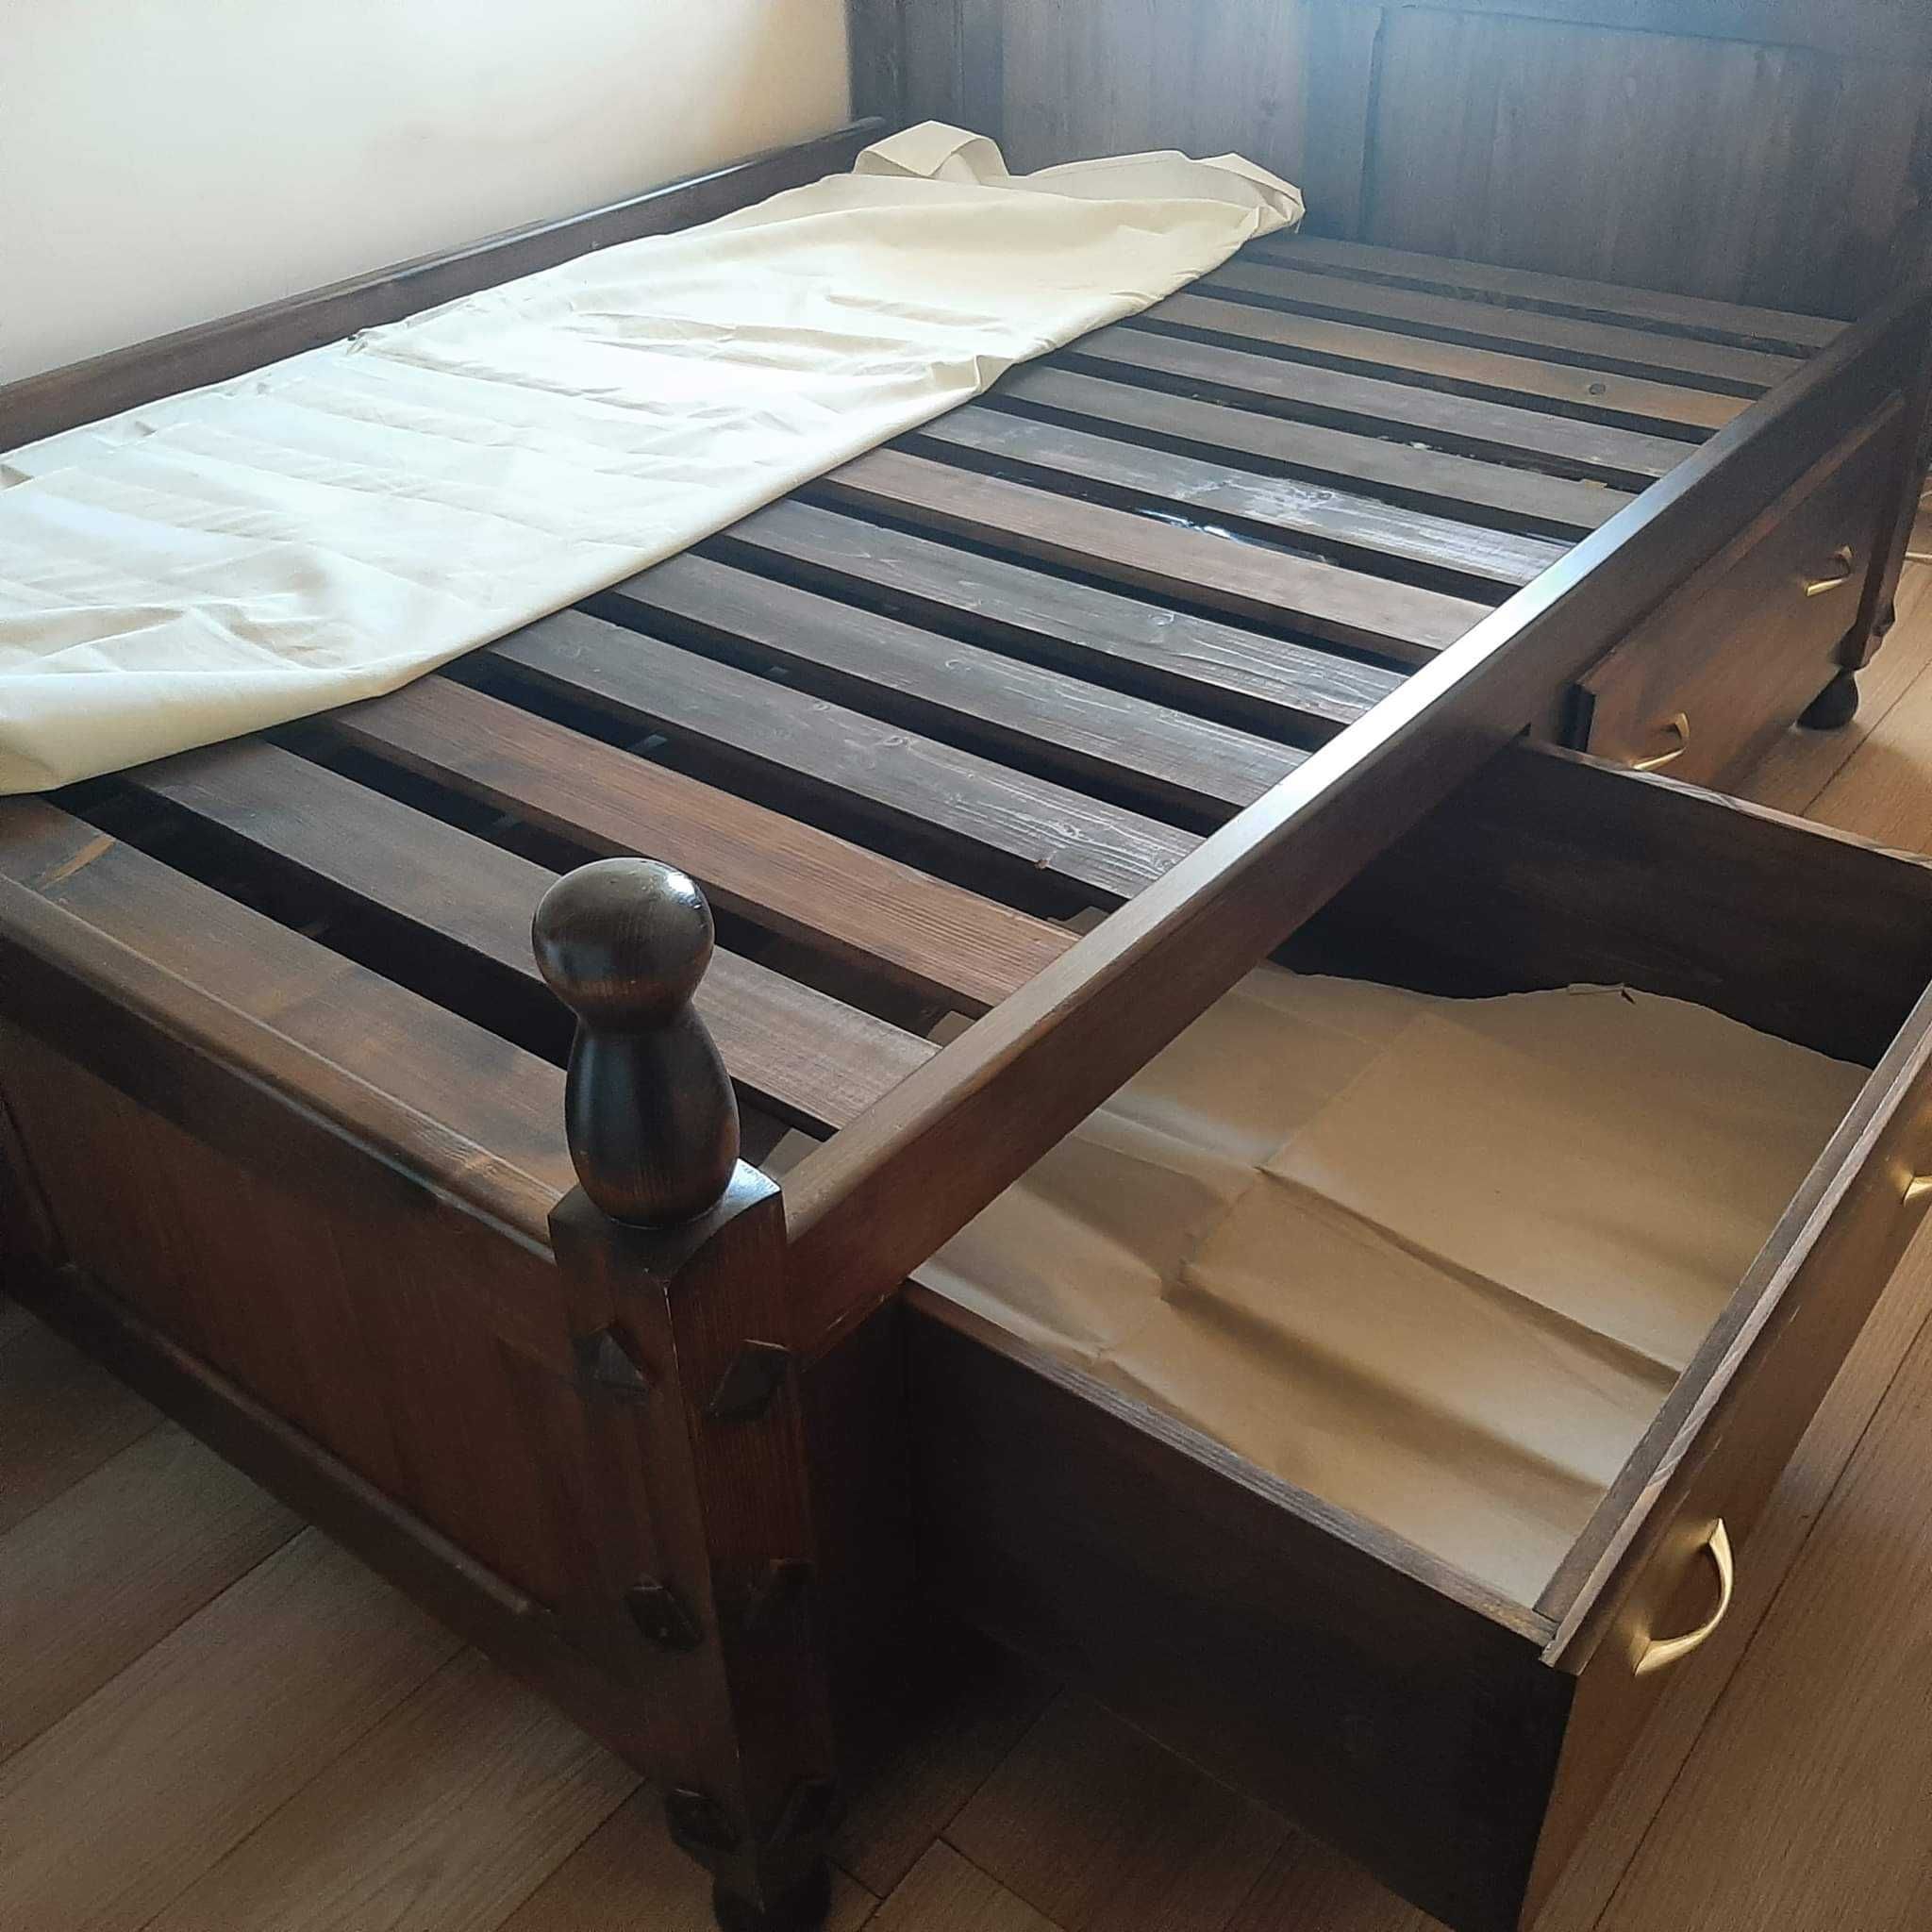 Łóżko drewniane 200x160